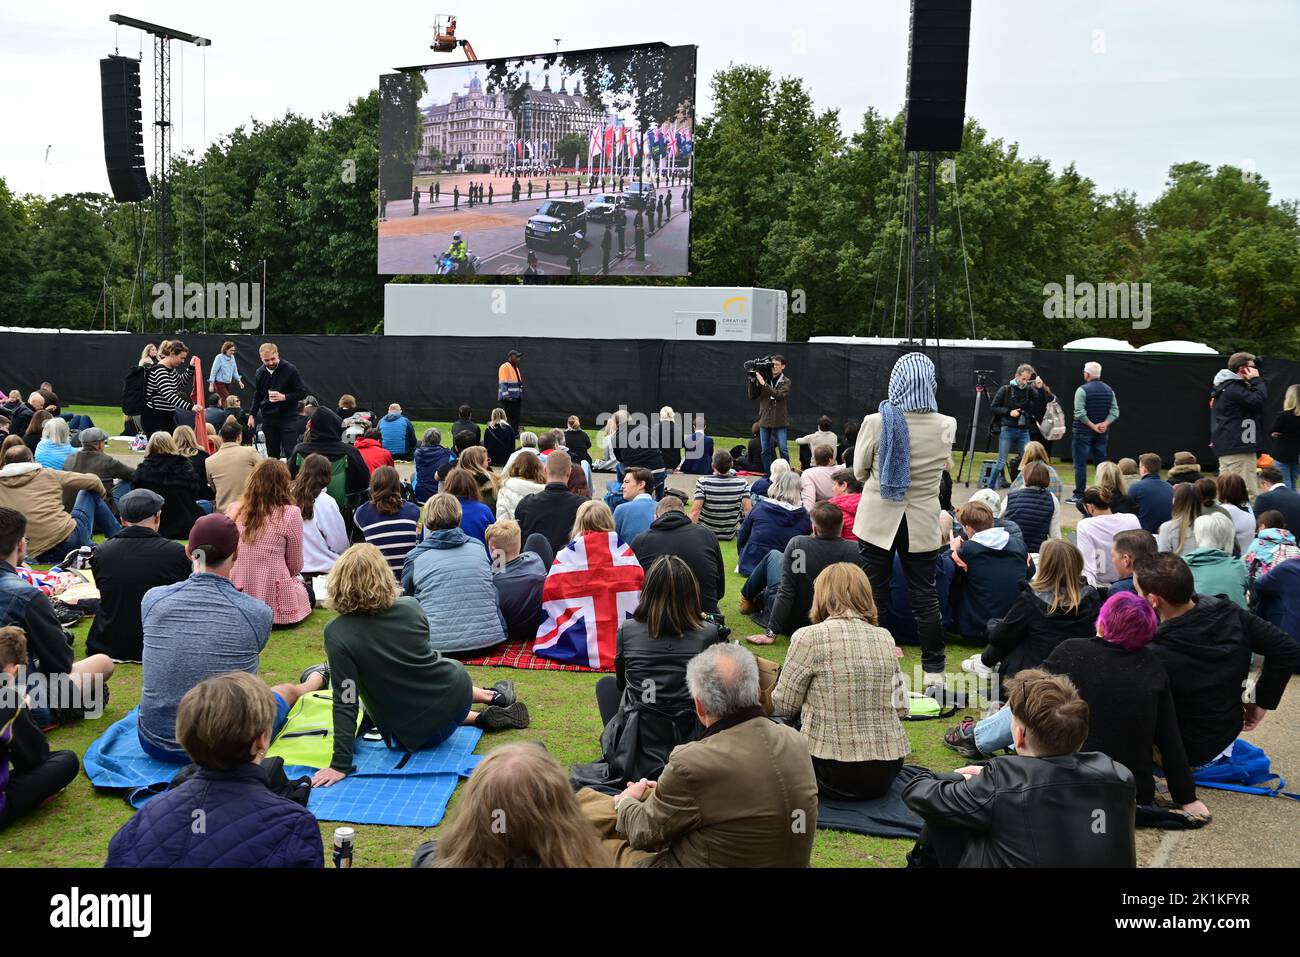 Funeral de Su Majestad la Reina Isabel II, Londres, Reino Unido, lunes 19th de septiembre de 2022. Multitudes de personas se reunieron en Hyde Park para ver la ceremonia en pantallas grandes. Foto de stock